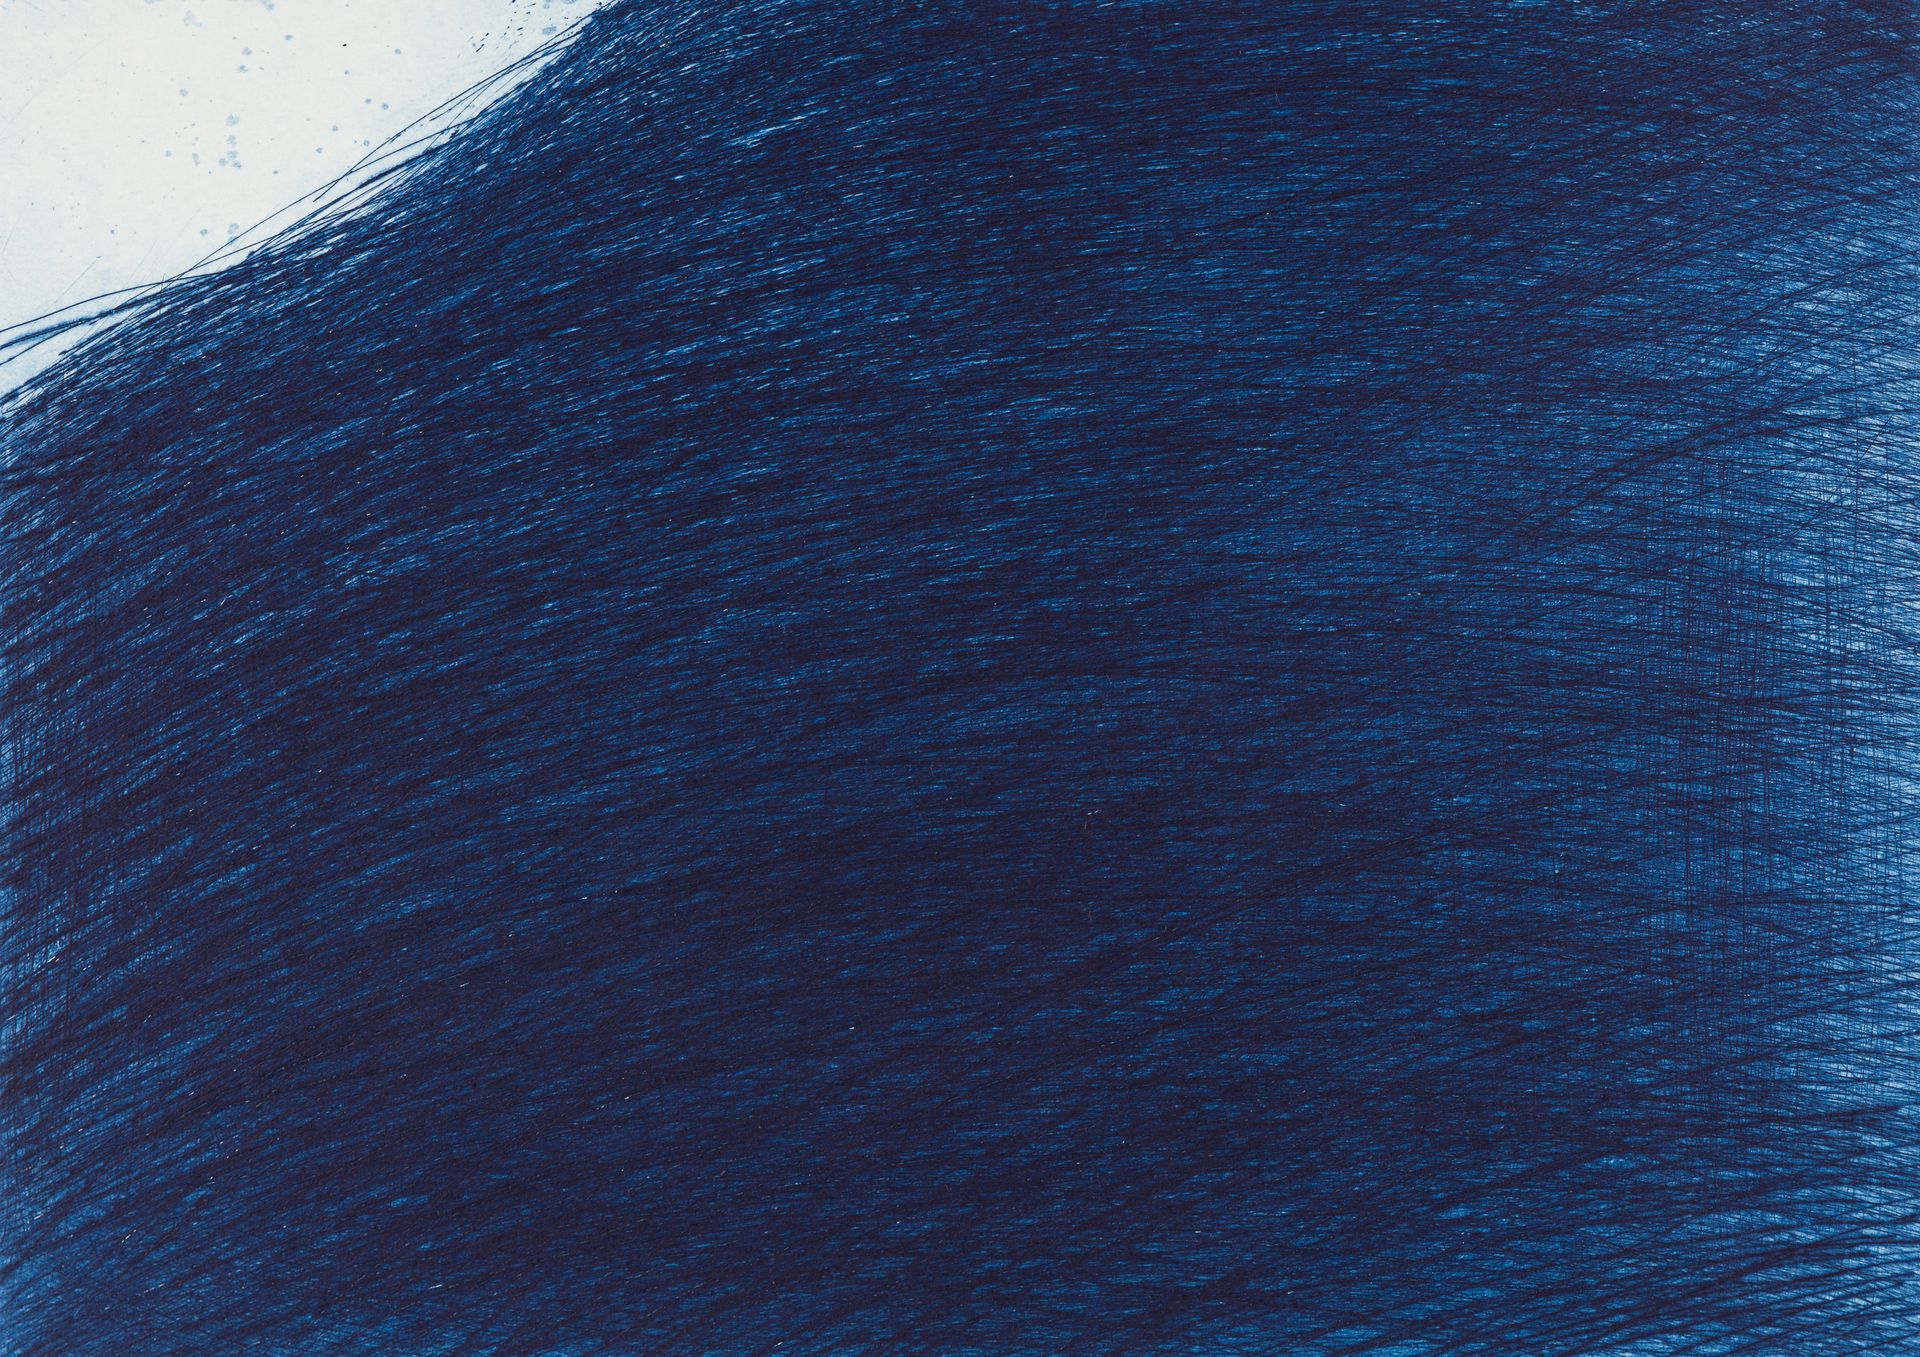 Rainer, Arnulf Mar Azul, 2019
Kaltnadelradierung auf Velin
Signiert rechts unten&hellip;